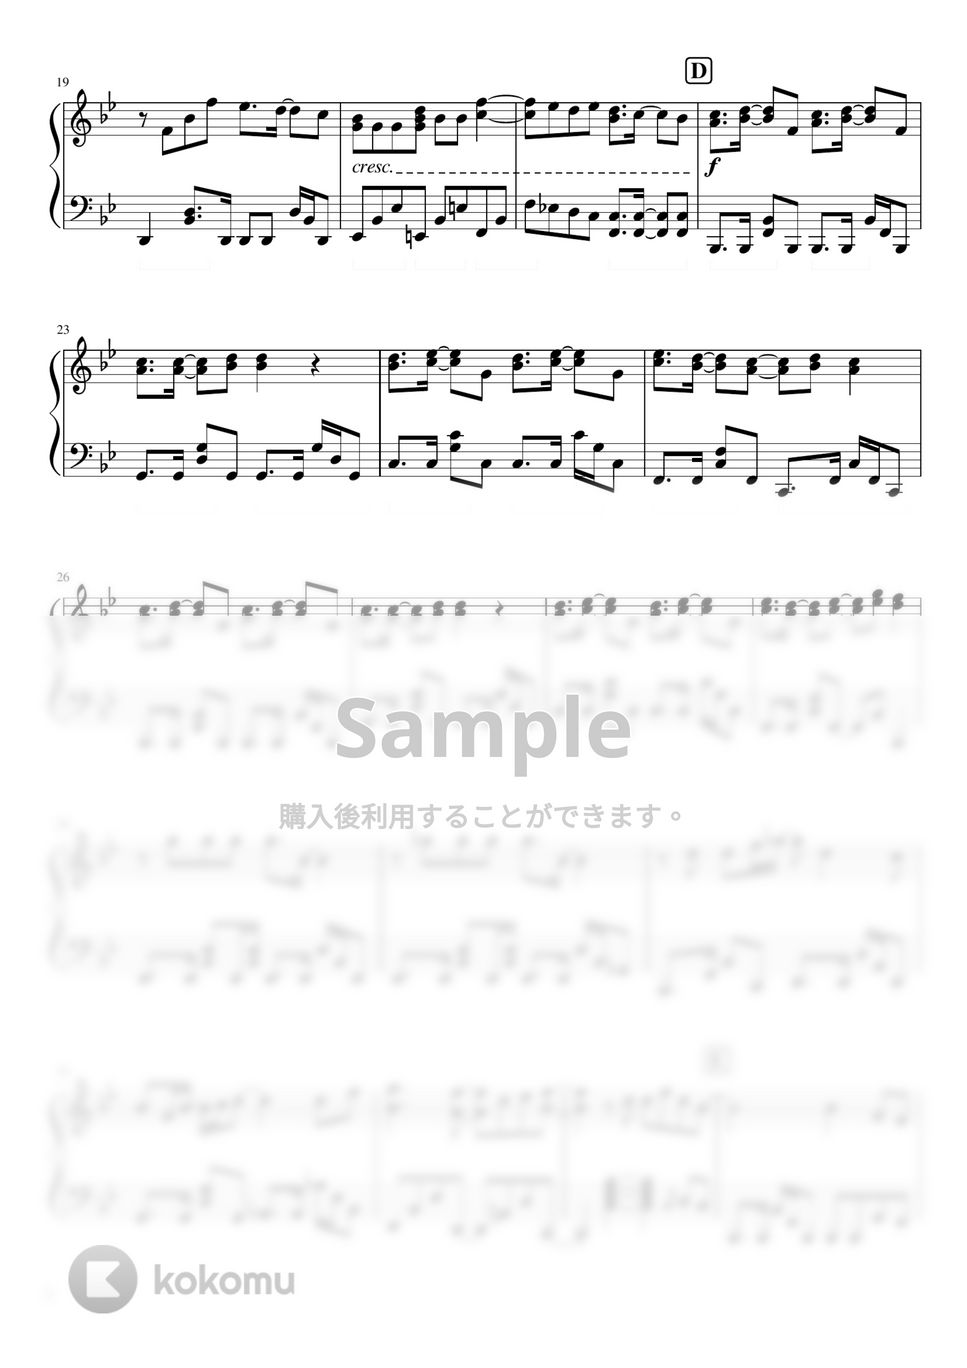 なにわ男子 - 冬がくれたたからもの ((なにわ男子/ 3rd single『ハッピーサプライズ』カップリング曲) by ピアノぷりん